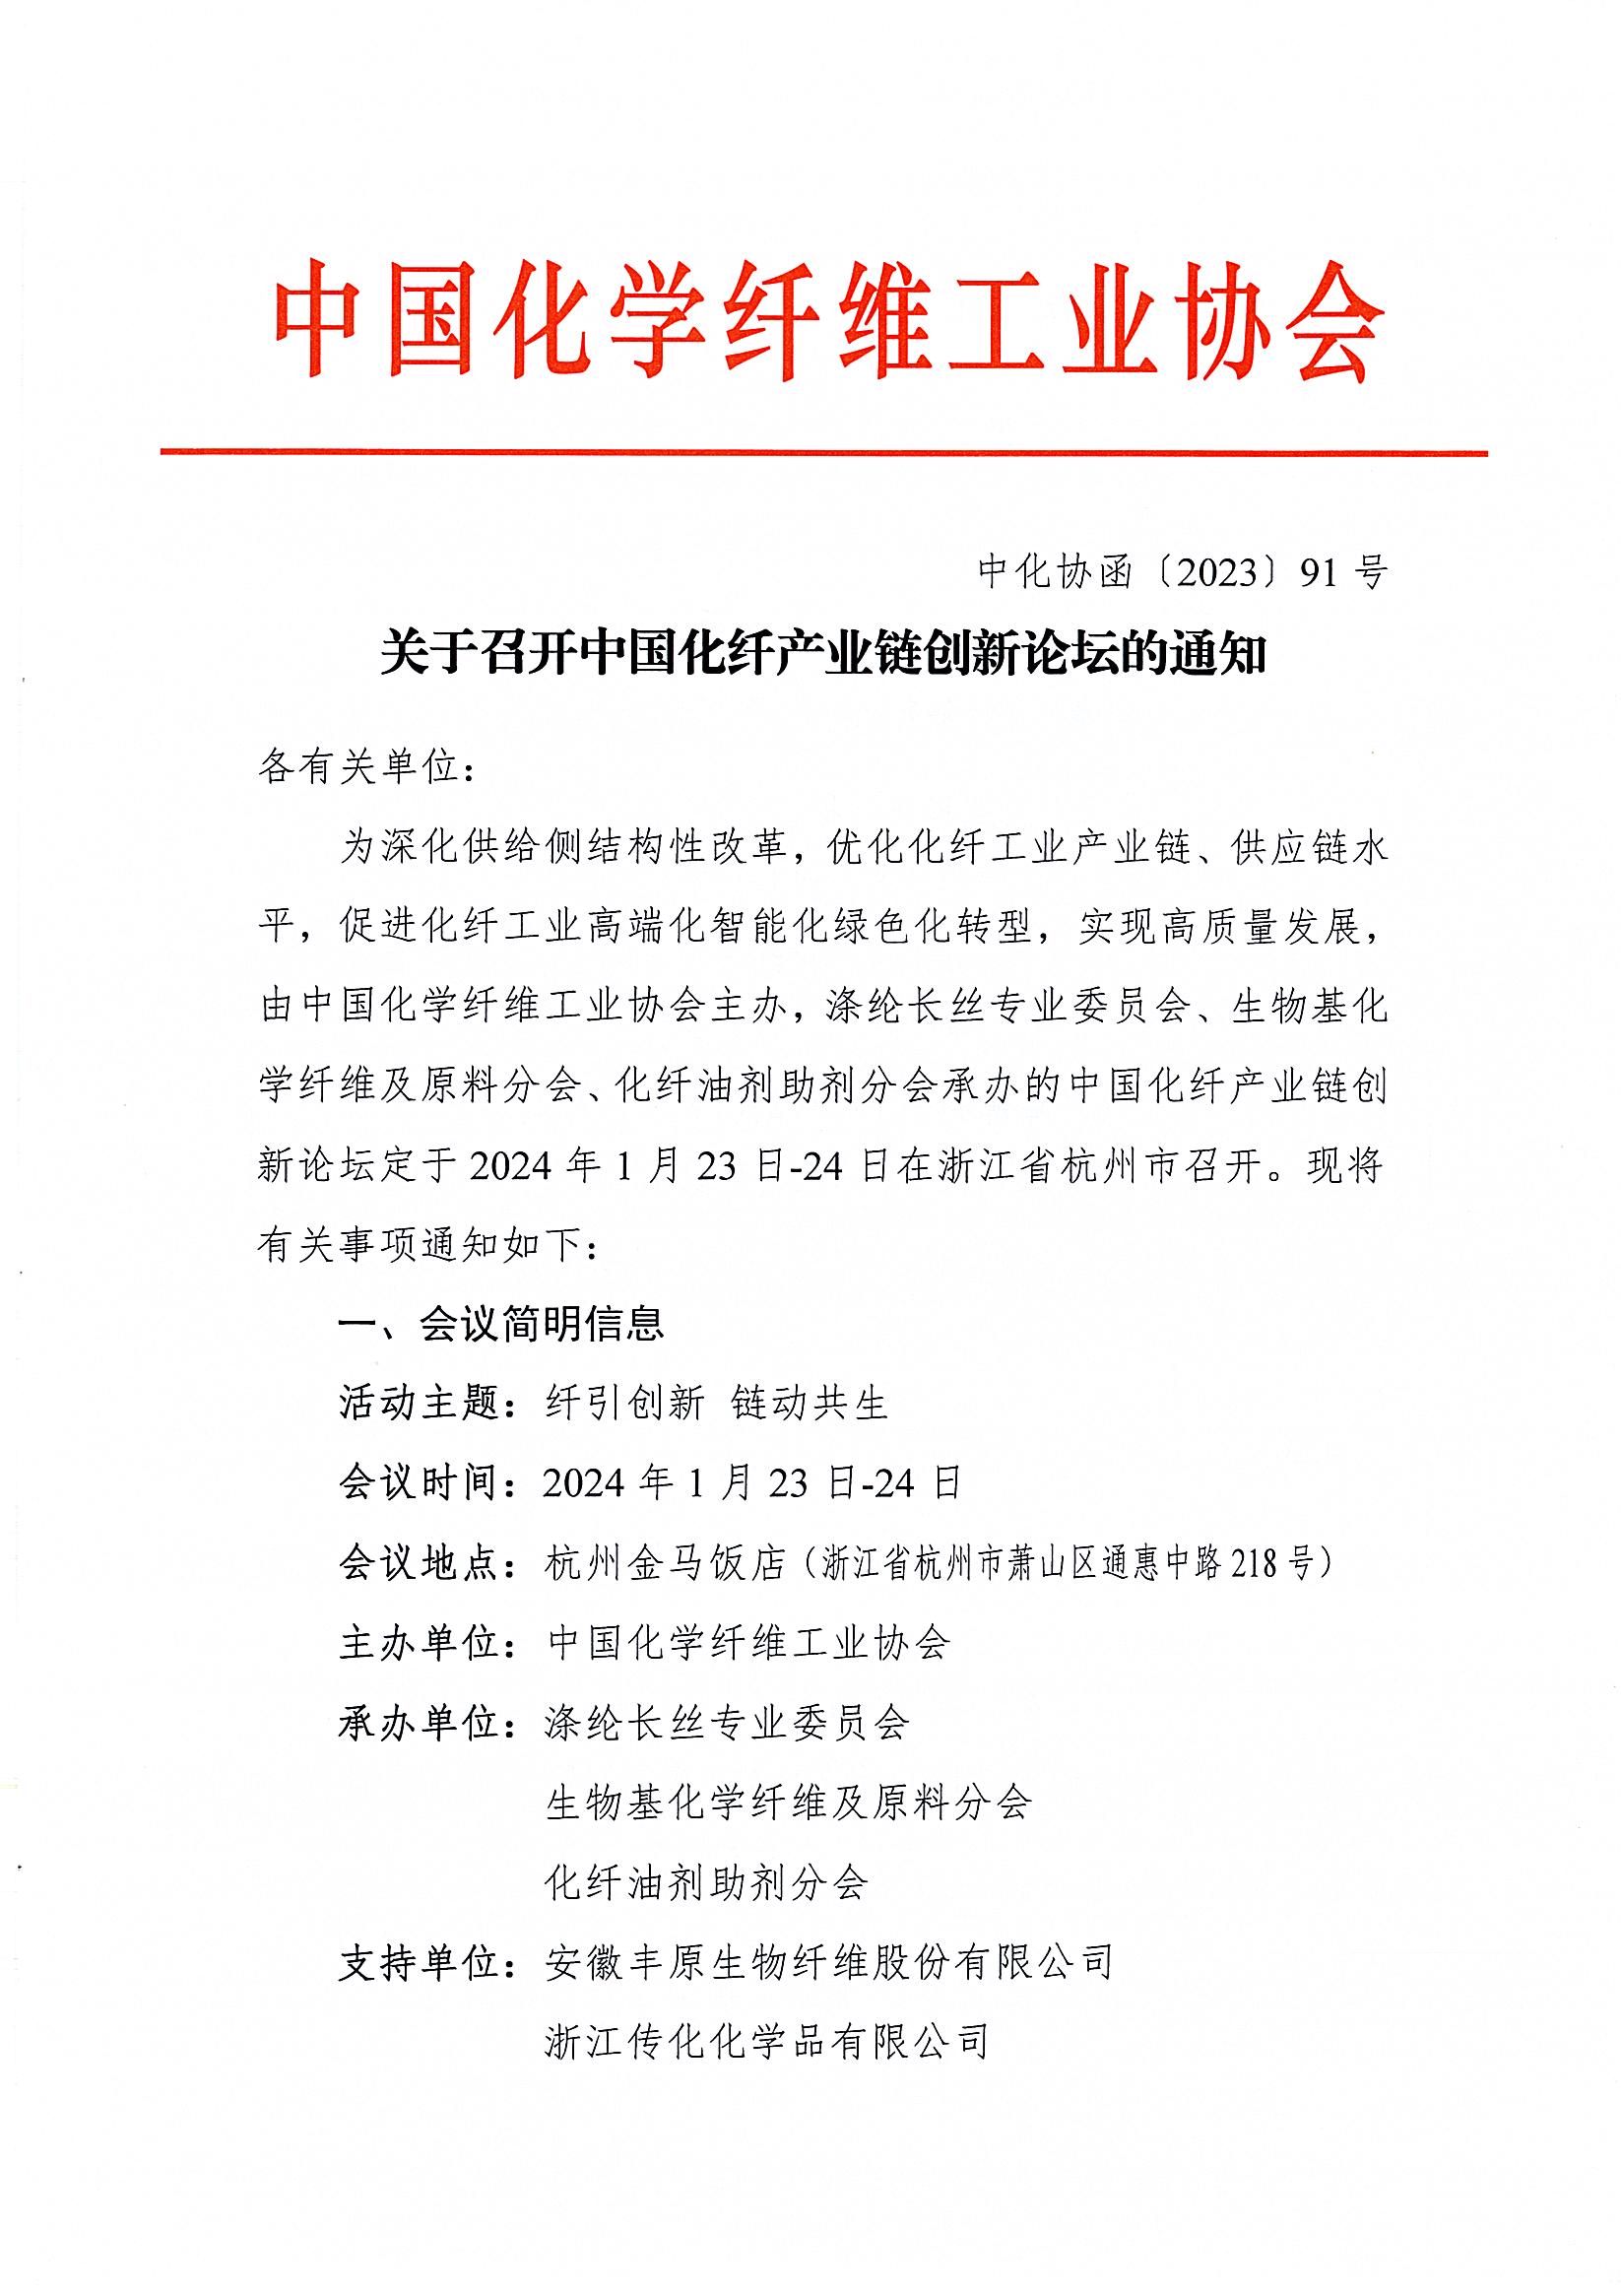 关于召开中国化纤产业链创新论坛的通知_页面_1.jpg